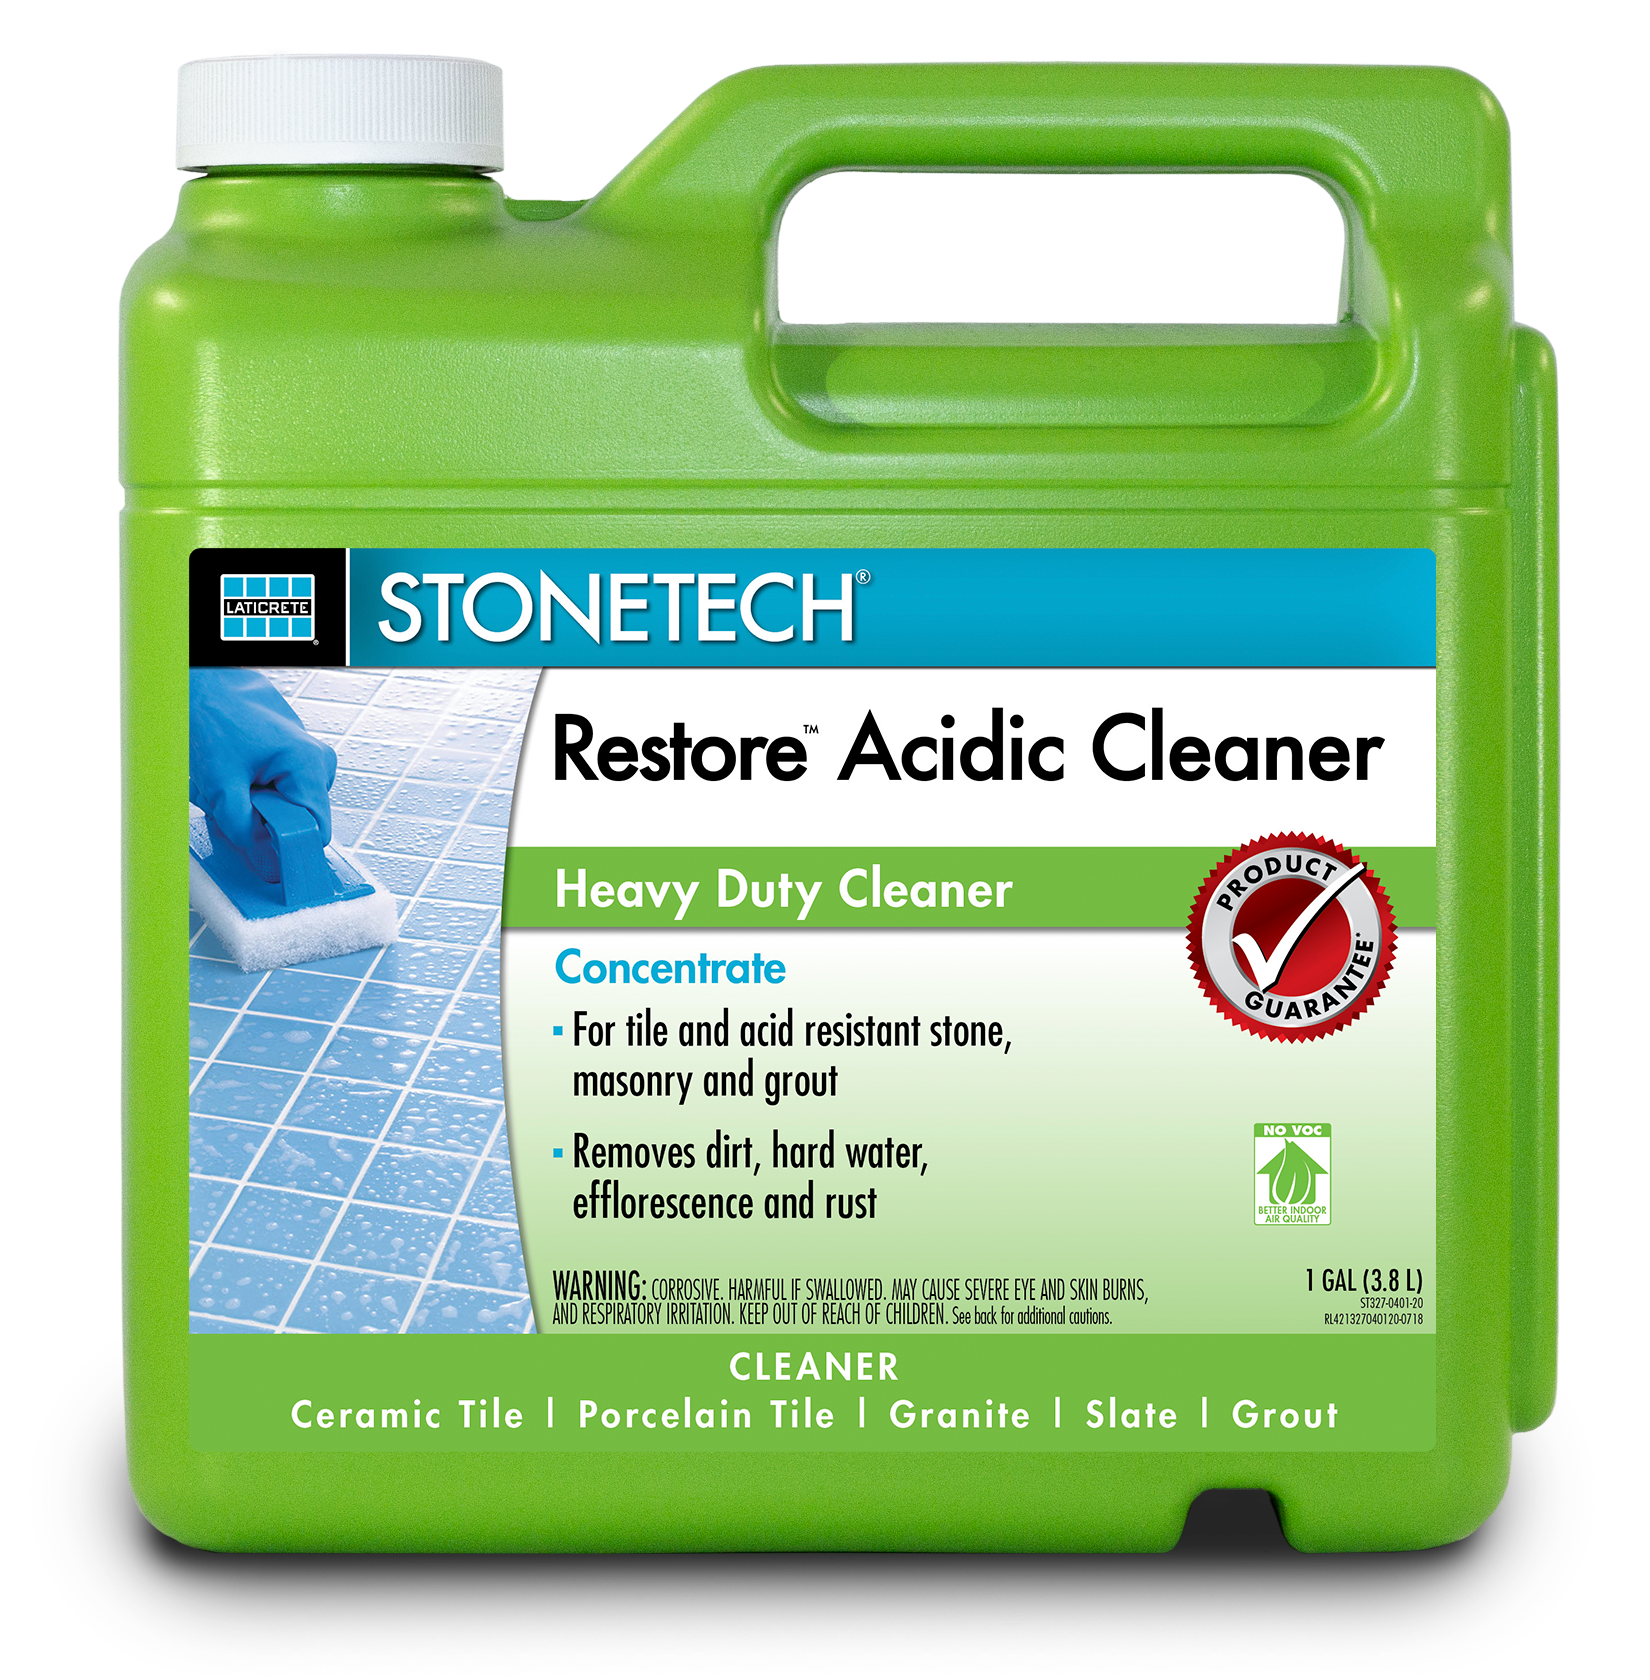 Stonetech Re Acidic Cleaner